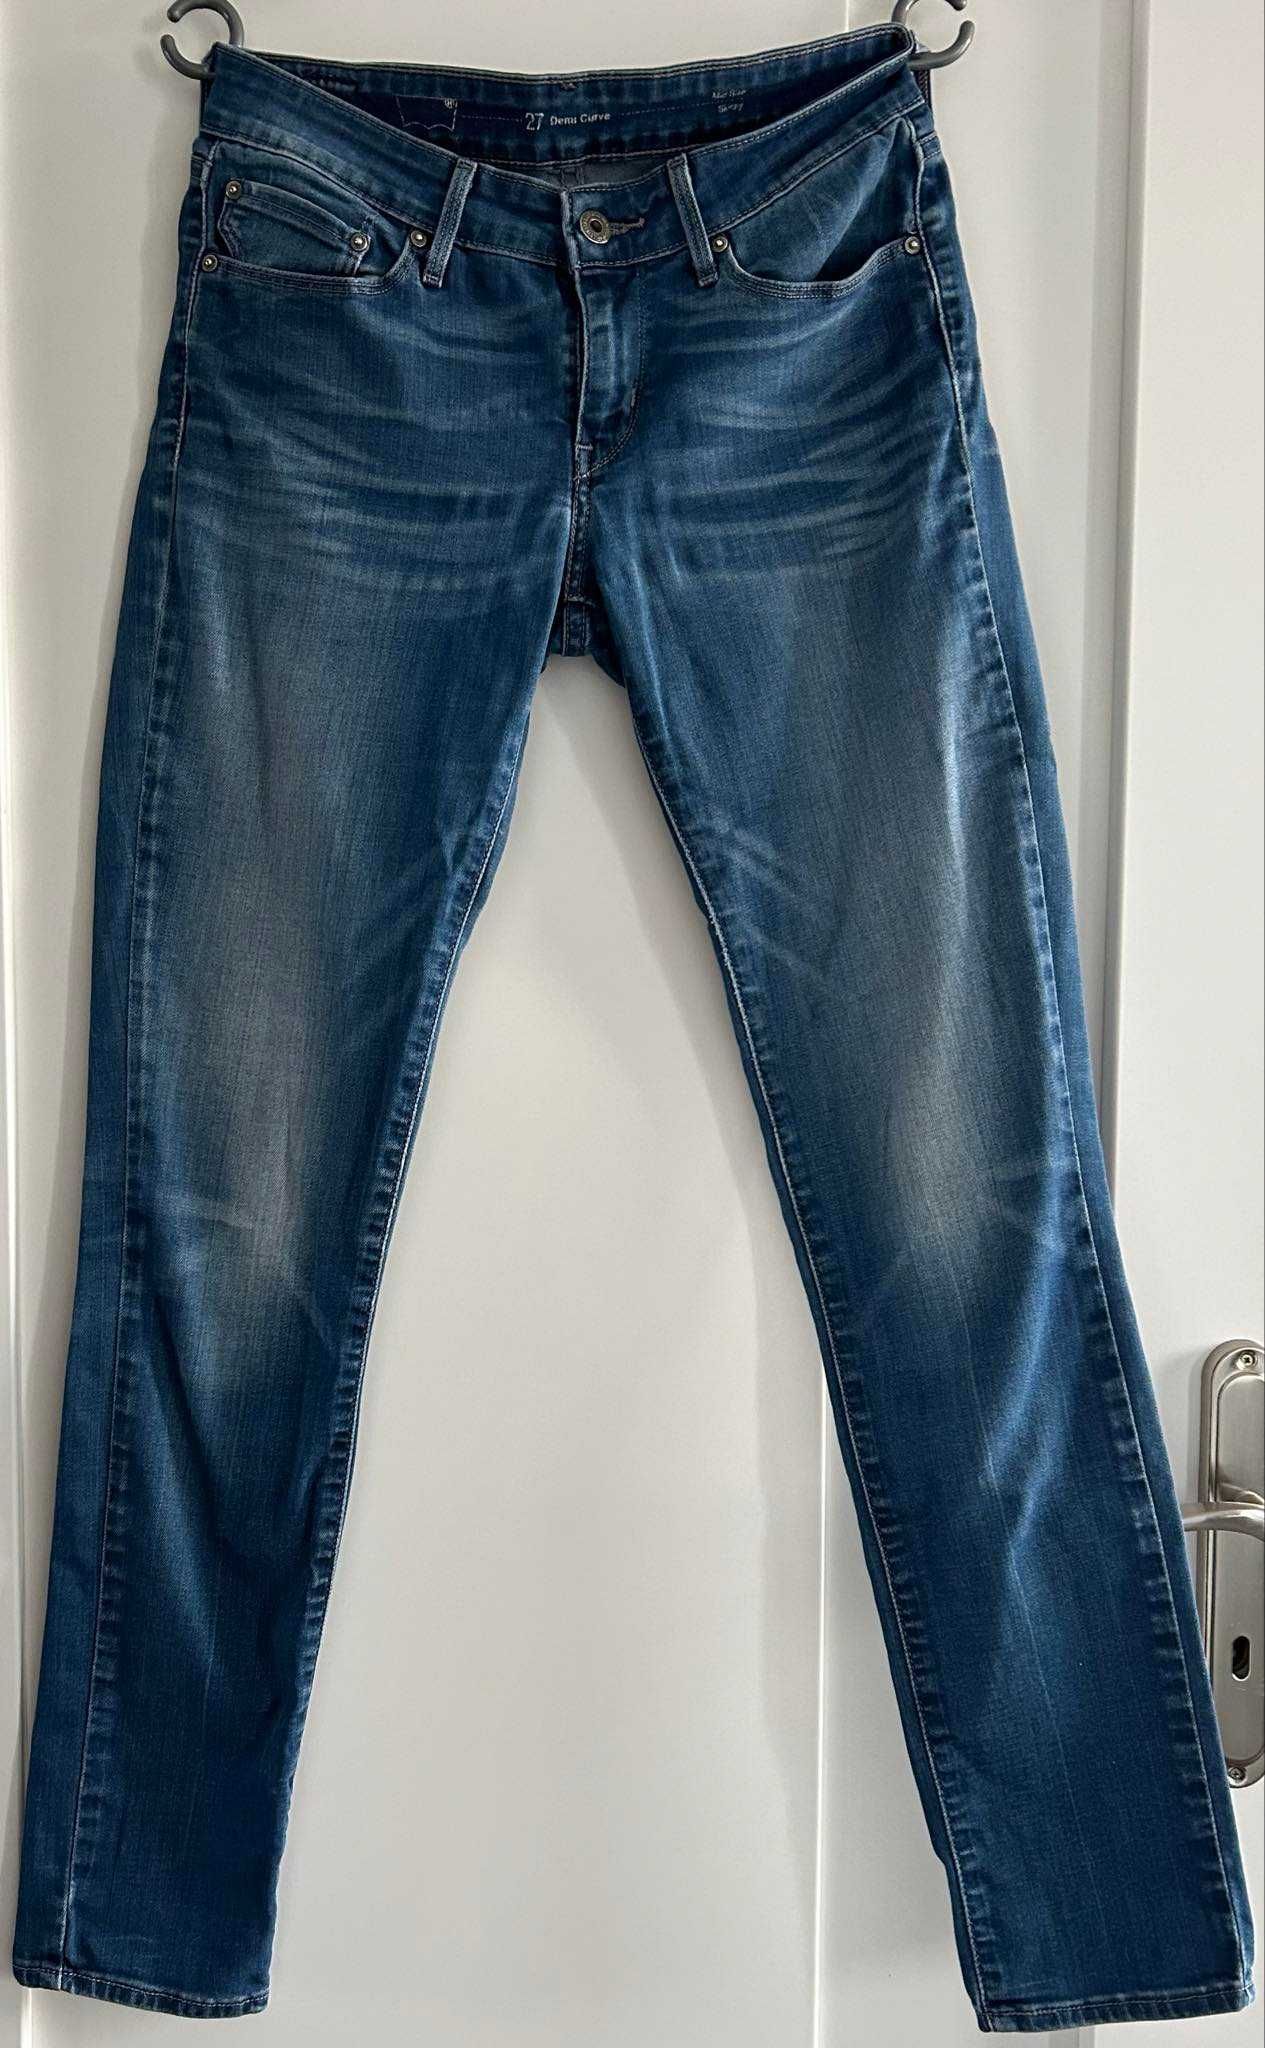 Klasyczne, oryginalne damskie jeansy dżinsy LEVIS skinny / rozmiar 27